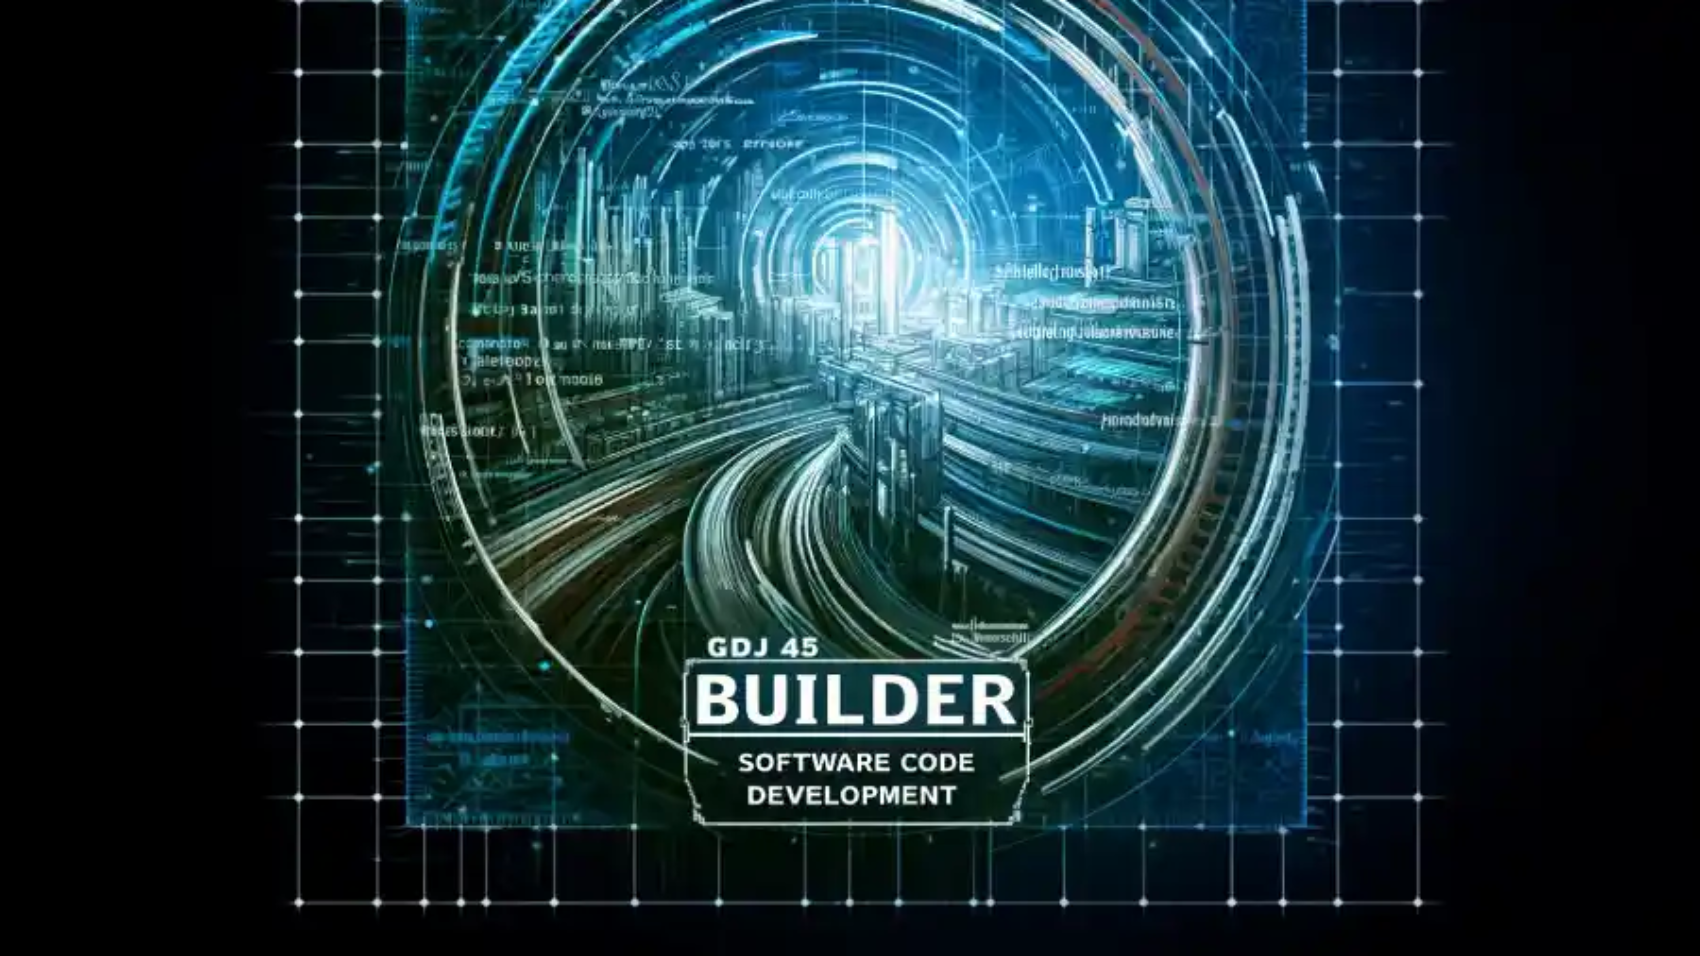 gdtj45 builder software code development